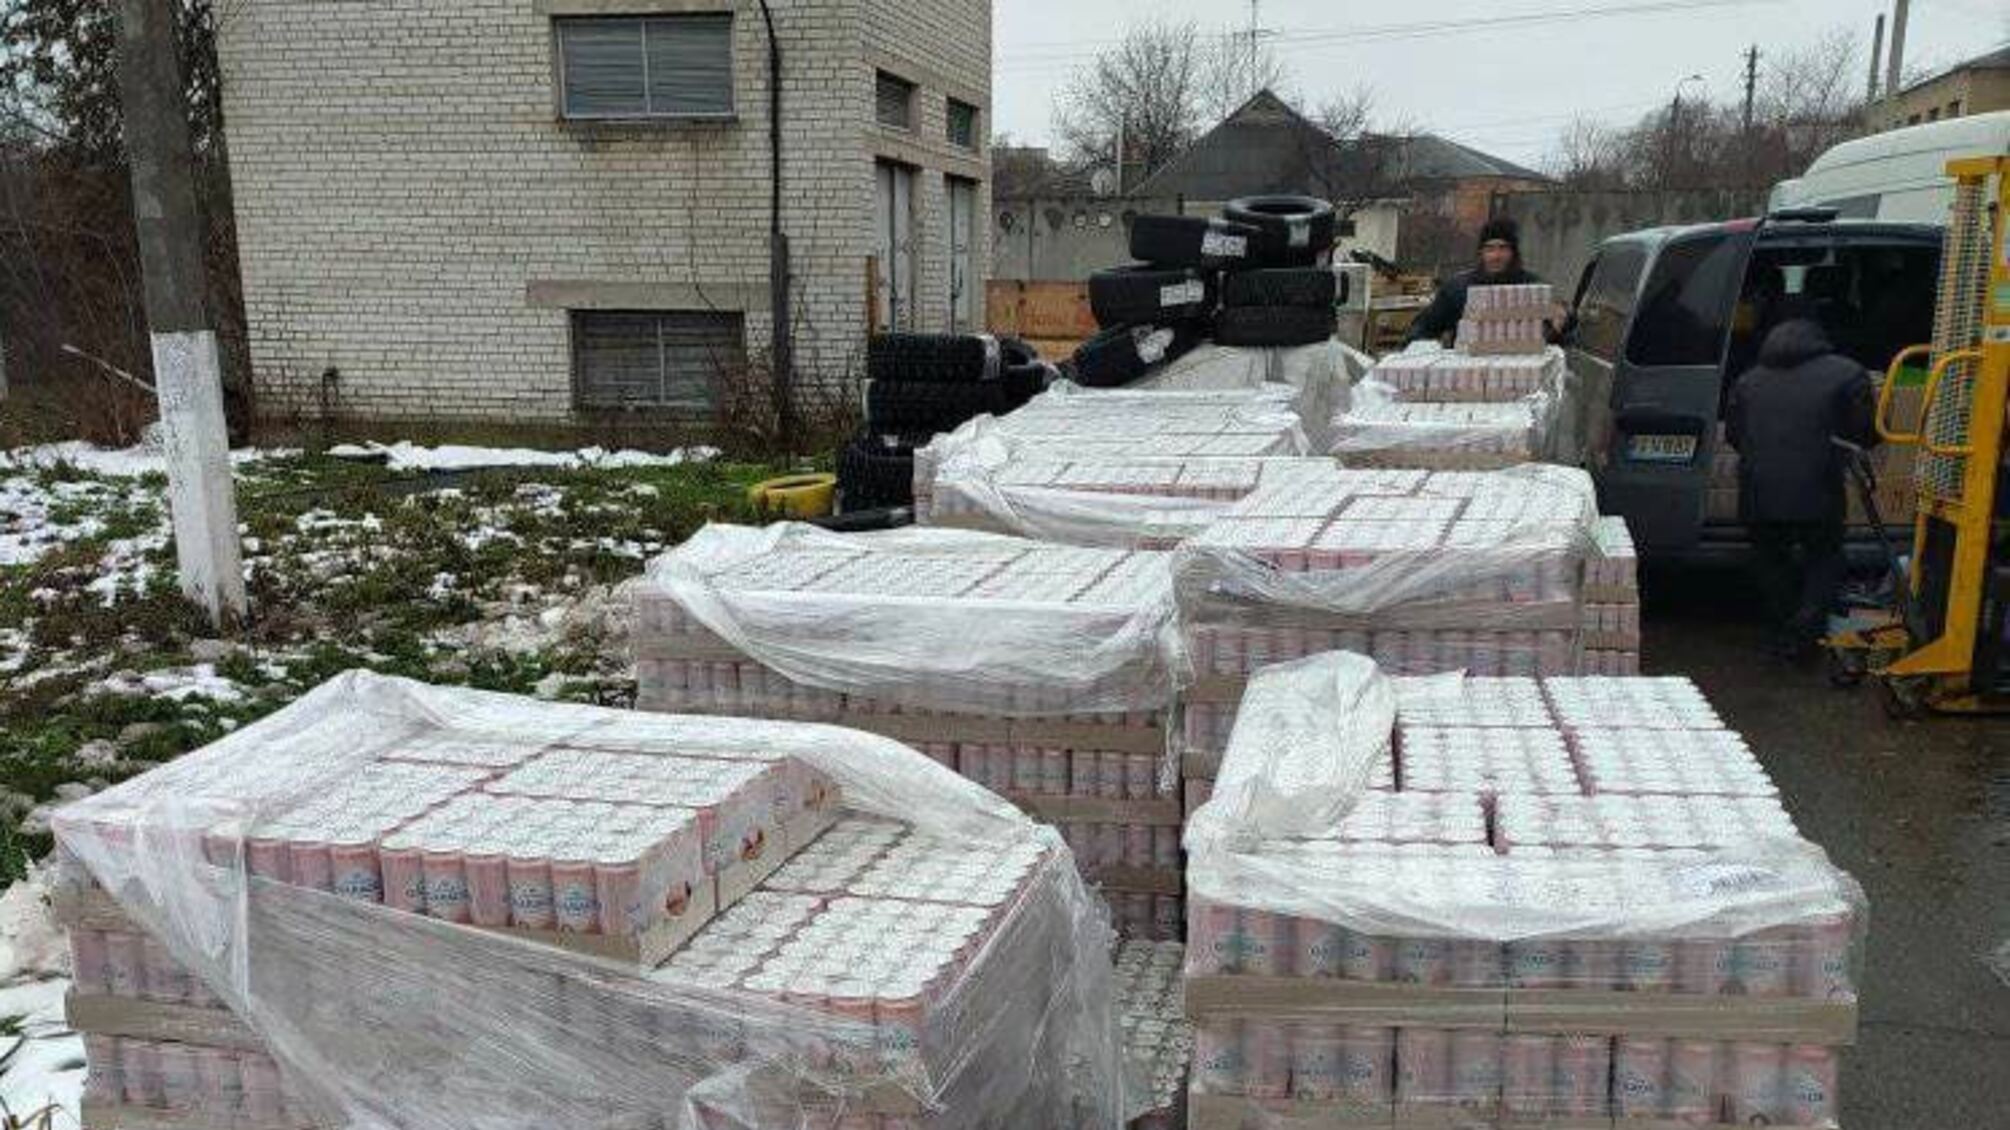 Компанія Carlsberg подарувала Україні 24 тисячі банок безалкогольного пива як гумдопомогу